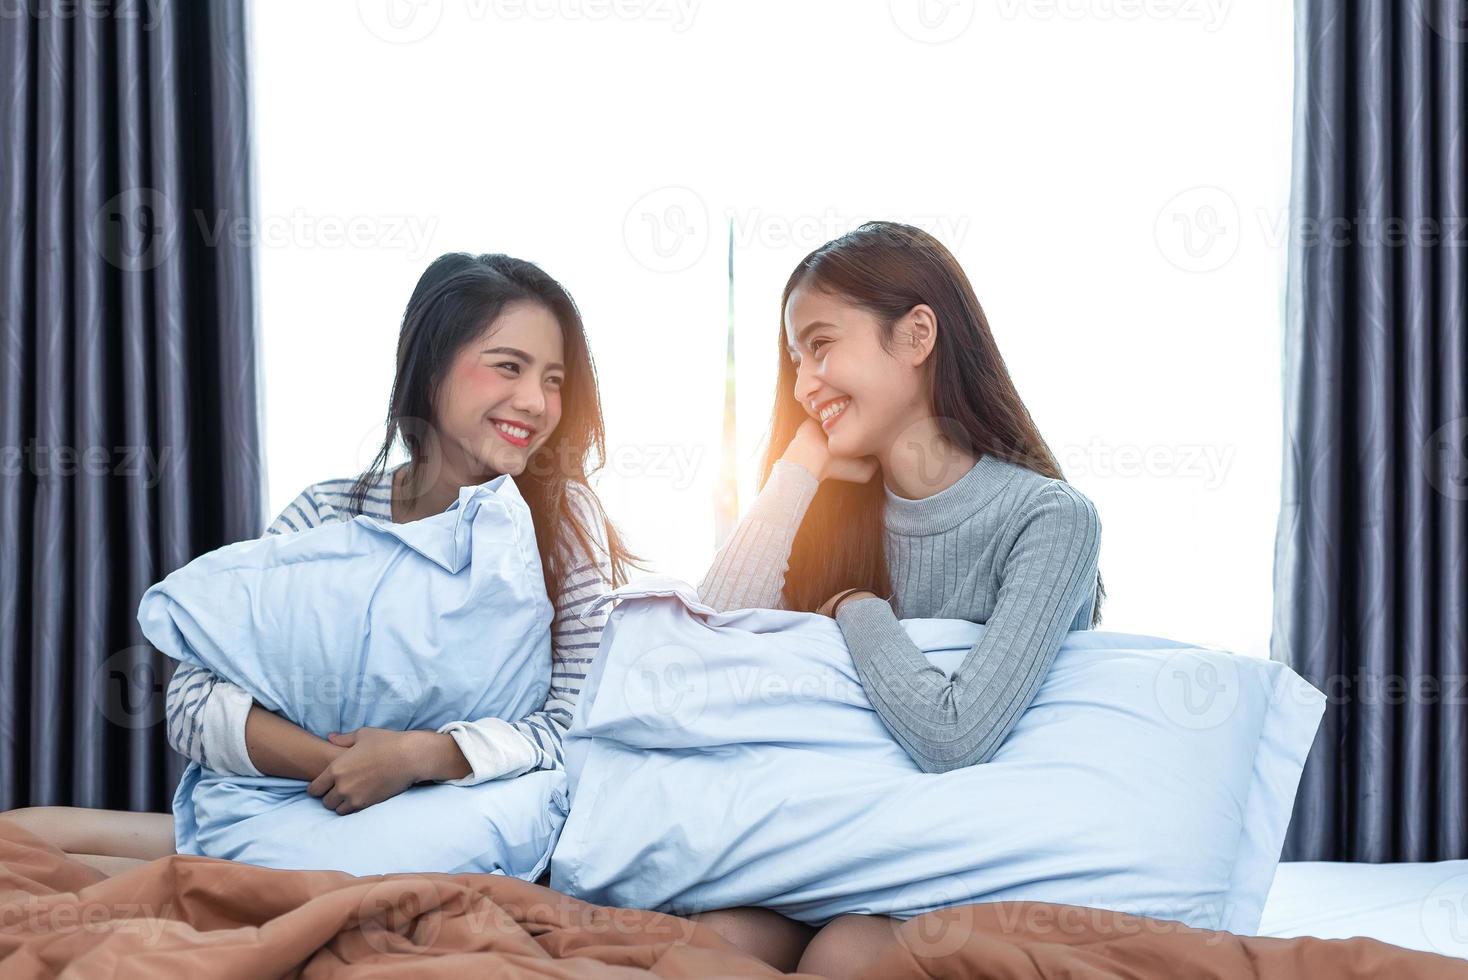 zwei asiatische lesbische frauen, die zusammen im schlafzimmer schauen. paar leute und schönheitskonzept. glücklicher Lebensstil und Home Sweet Home Thema. Kissenkissenelement und Fensterhintergrund foto